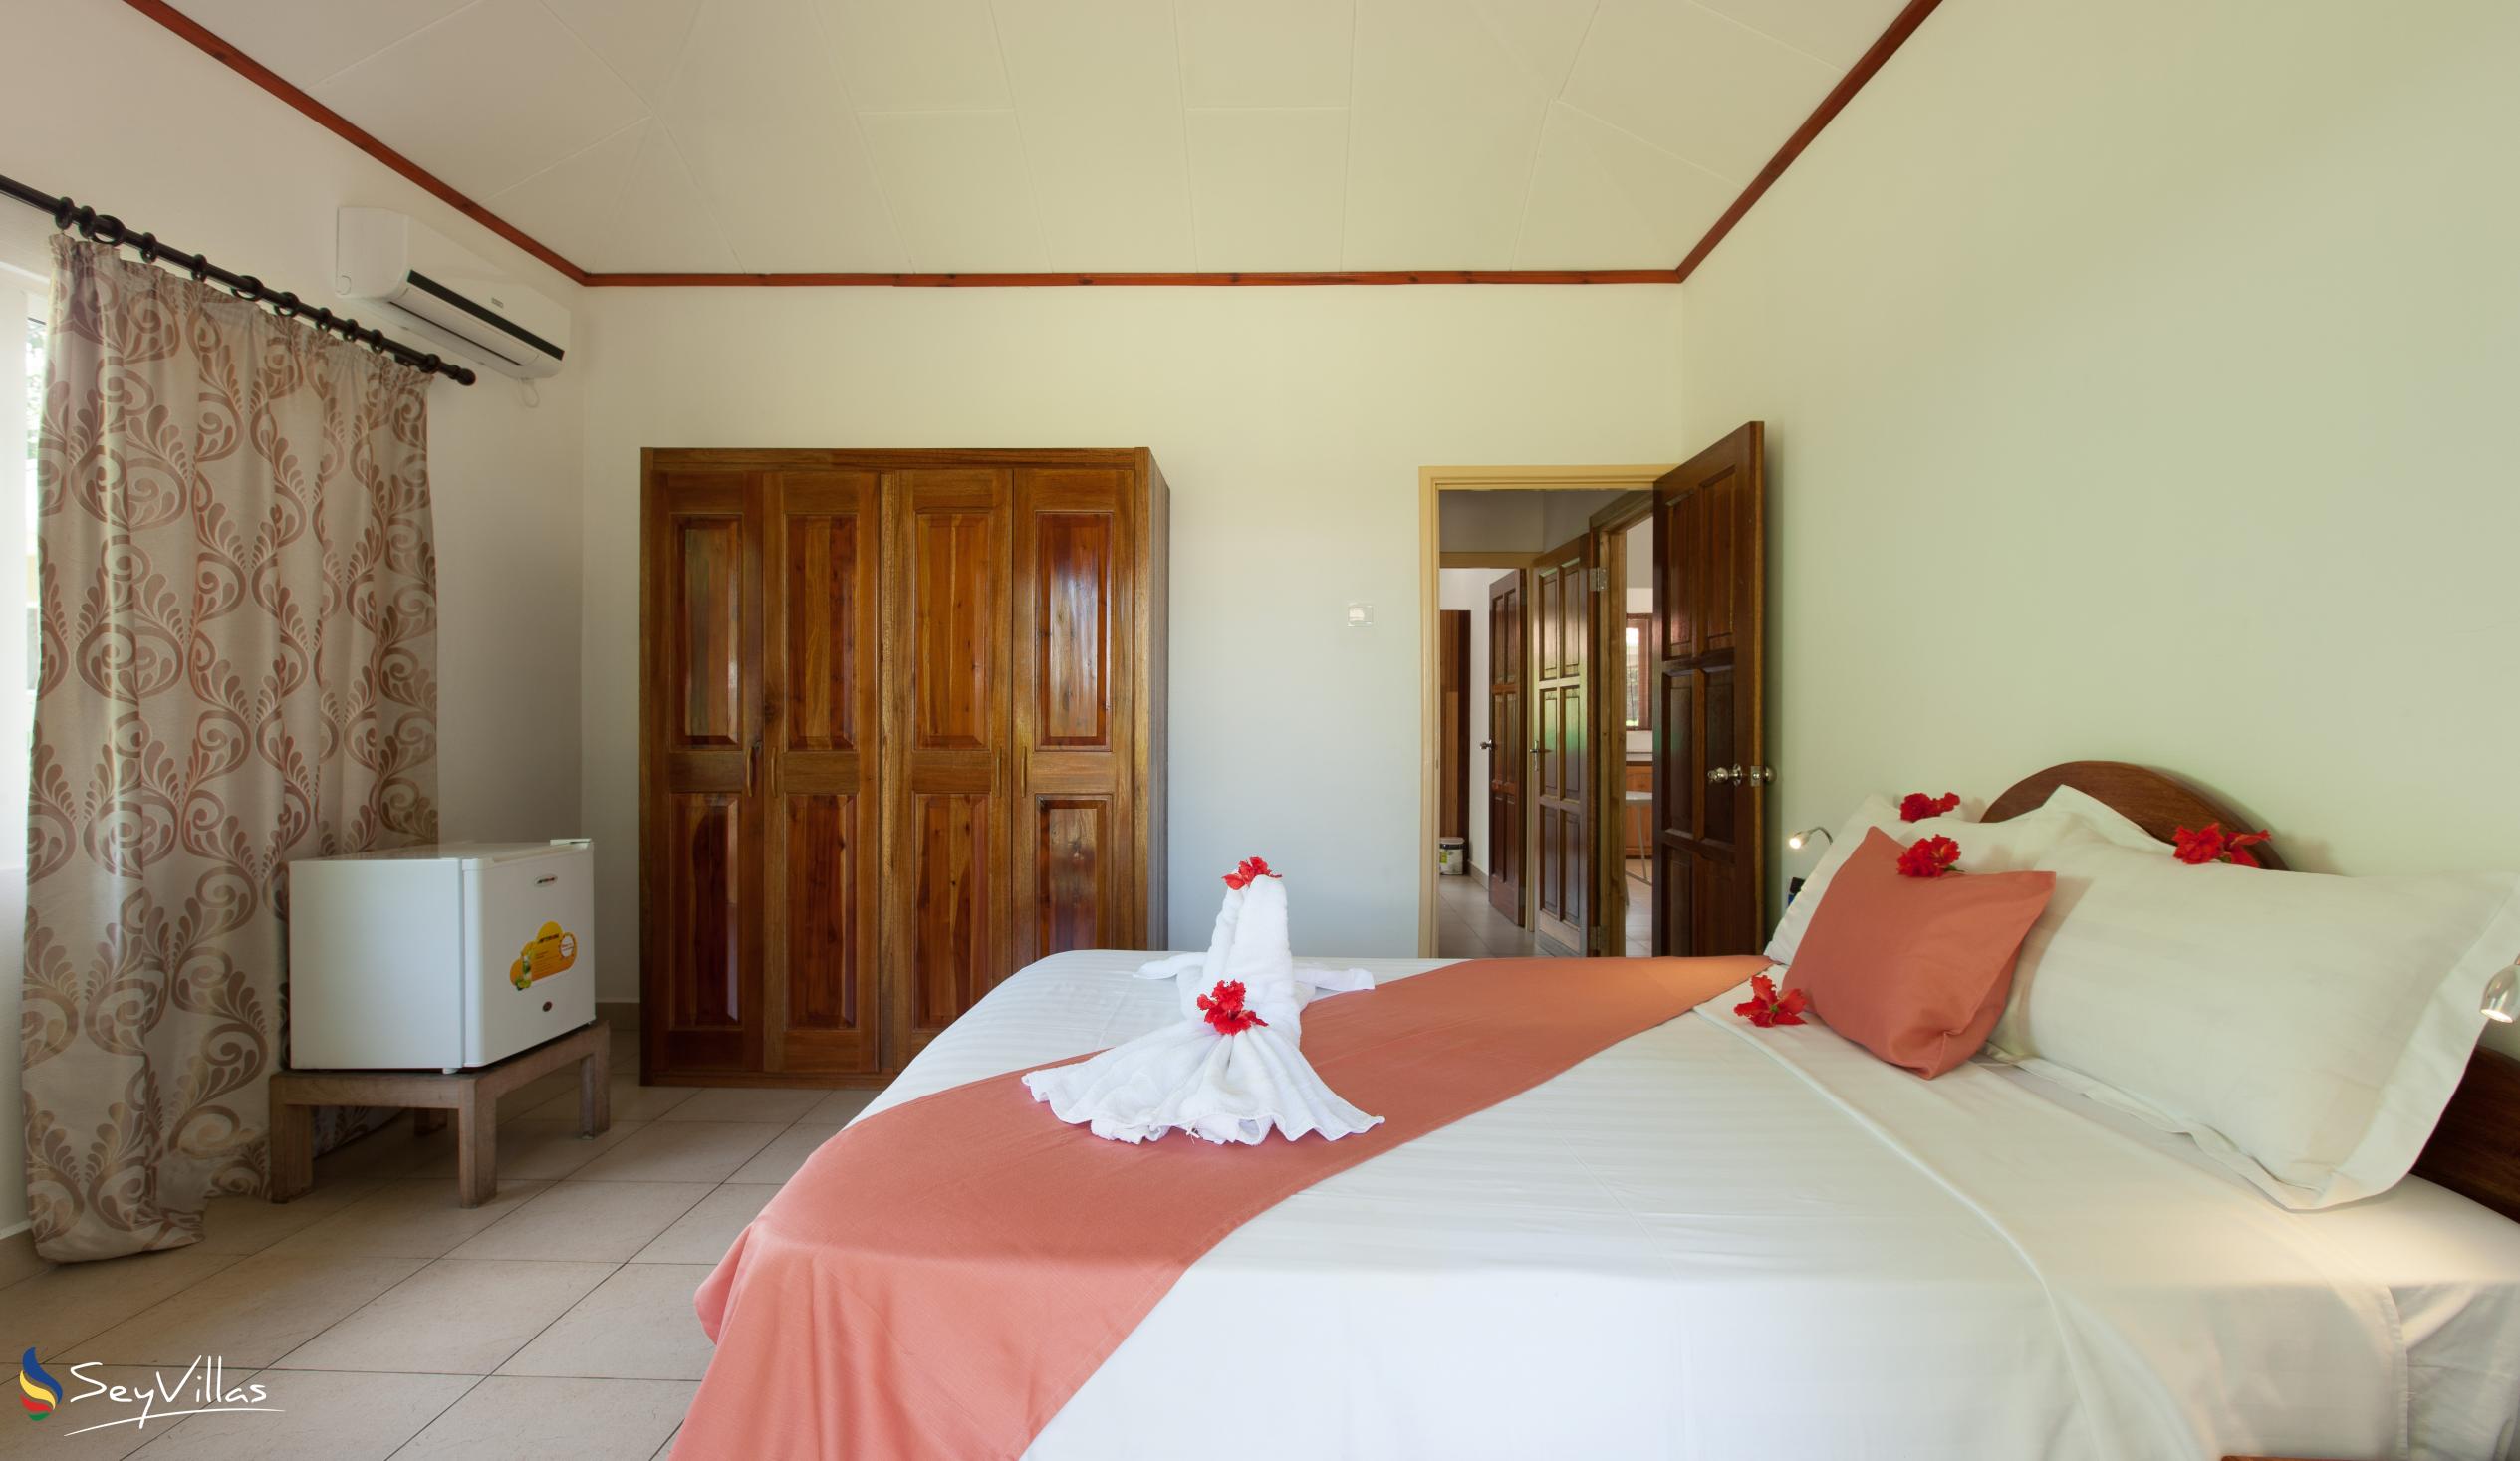 Foto 30: Hostellerie La Digue - Chalet 3 chambres - La Digue (Seychelles)